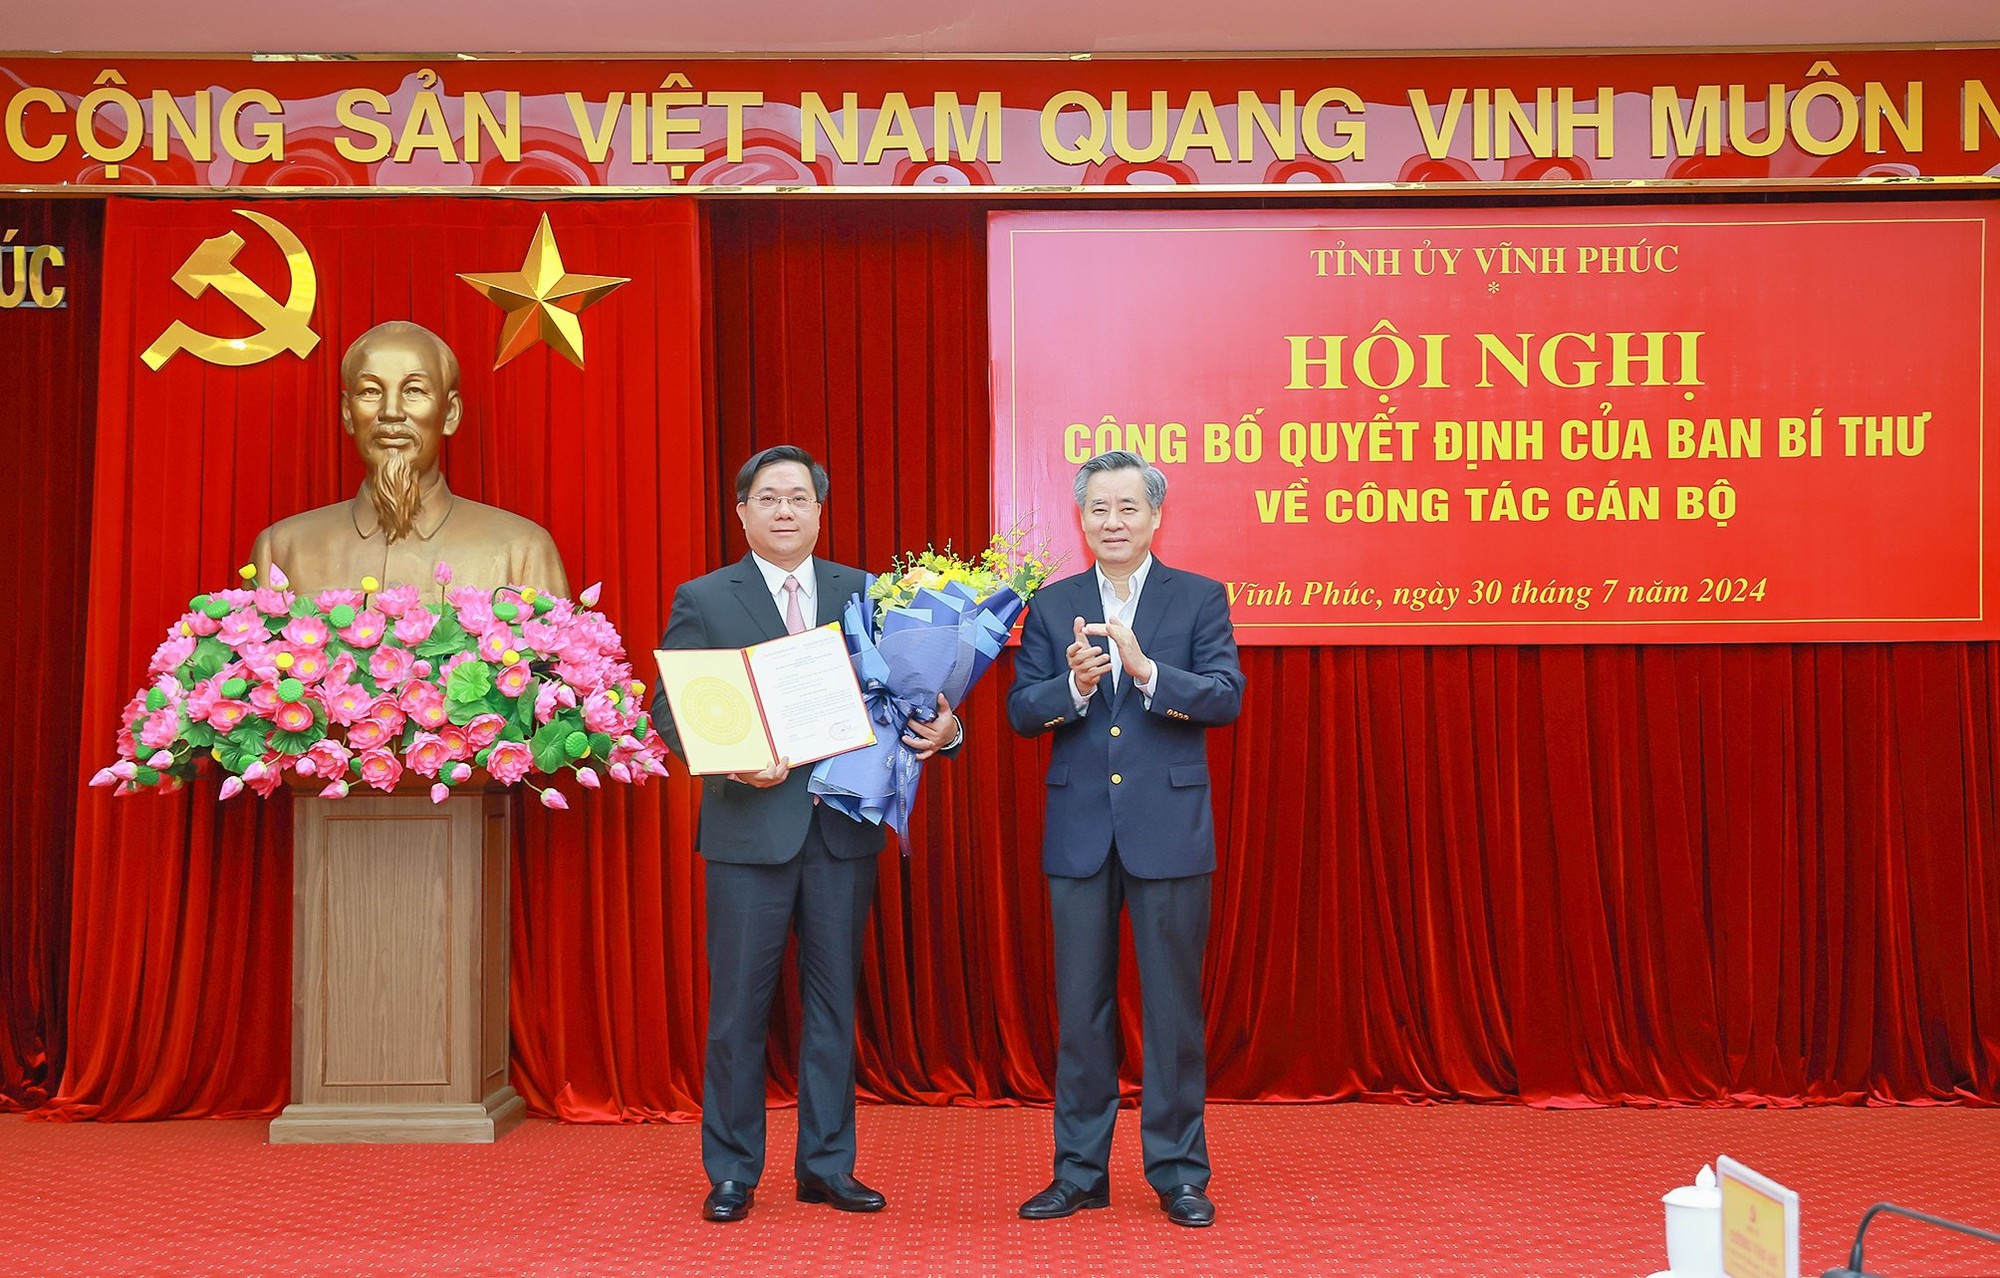 Phó Trưởng Ban Tổ chức Trung ương Nguyễn Quang Dương trao quyết định của Ban Bí thư